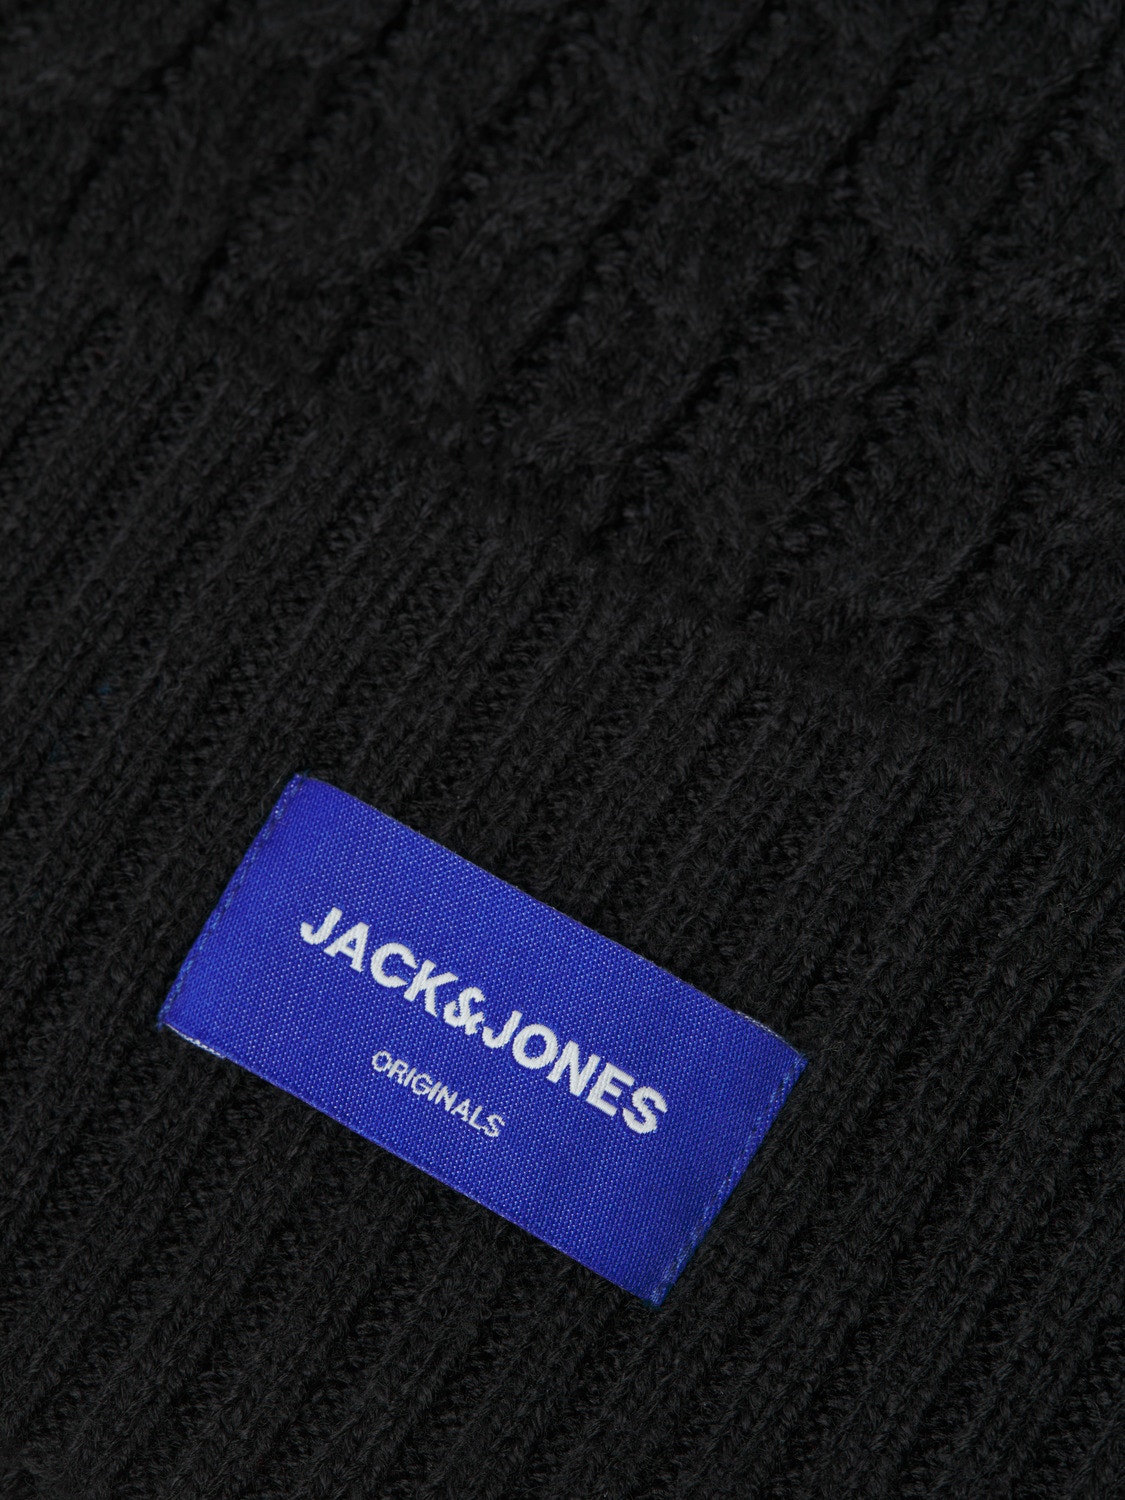 Jack & Jones Hue -Black - 12247260